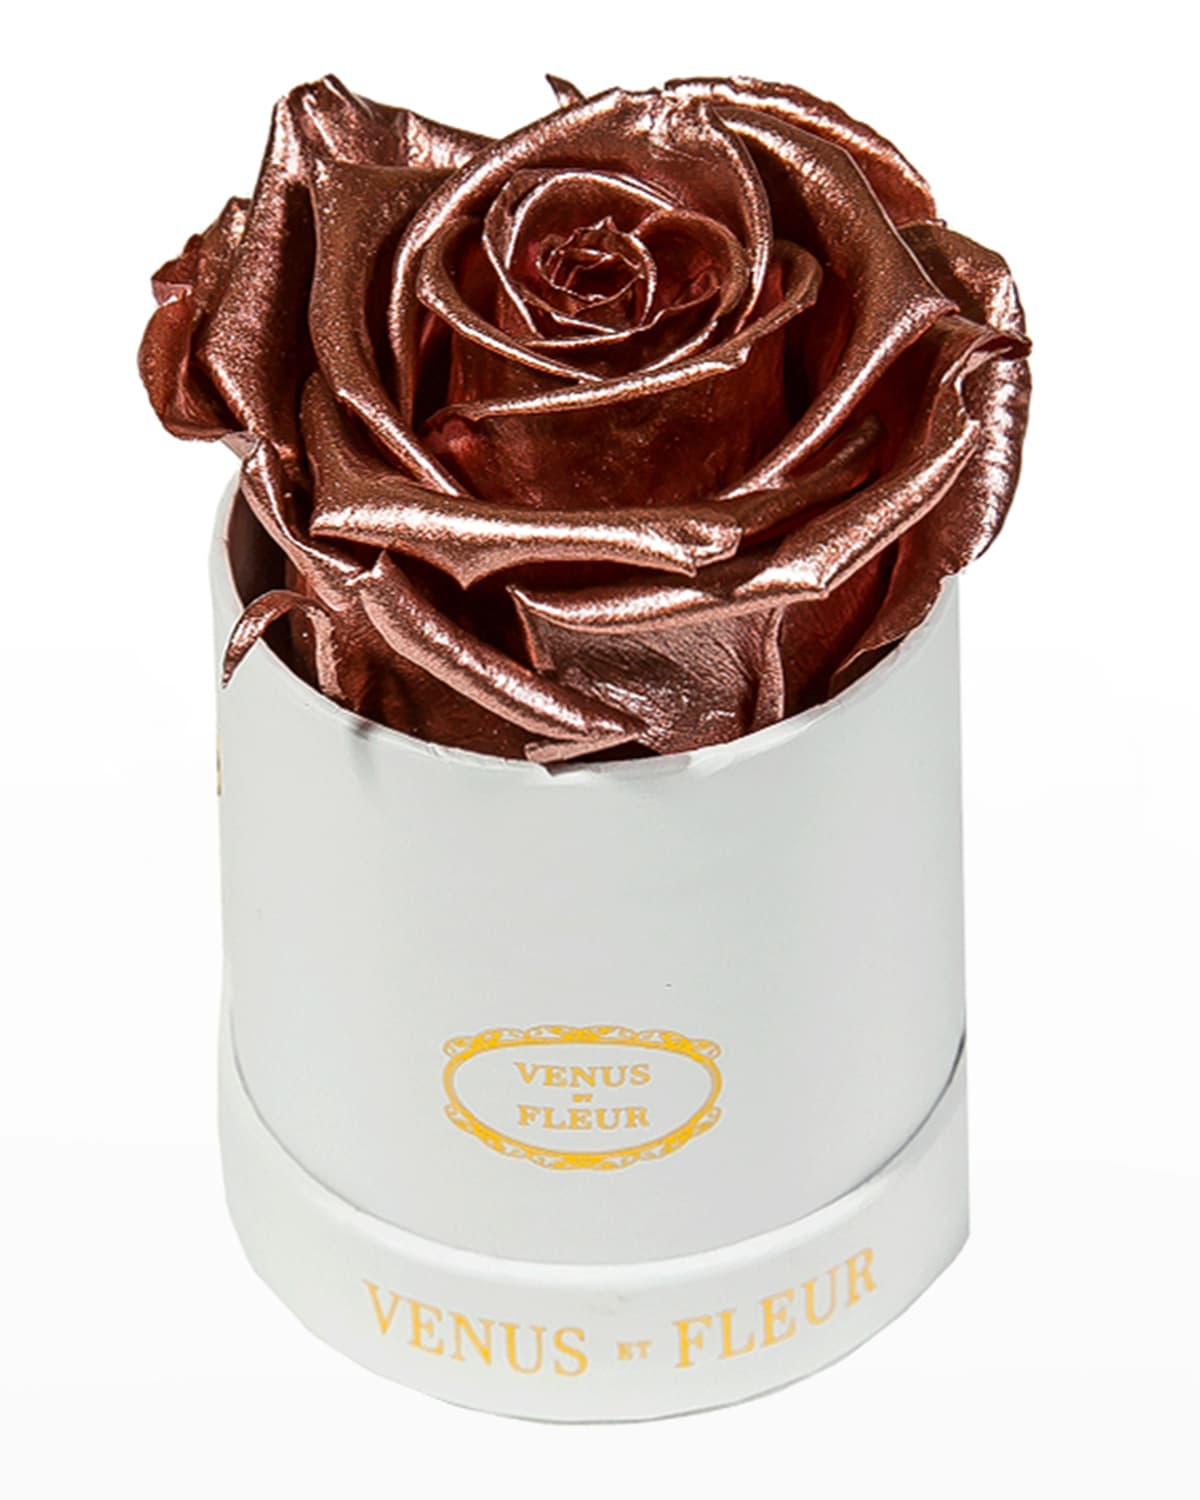 Venus Et Fleur Classic Mini Round Rose Box